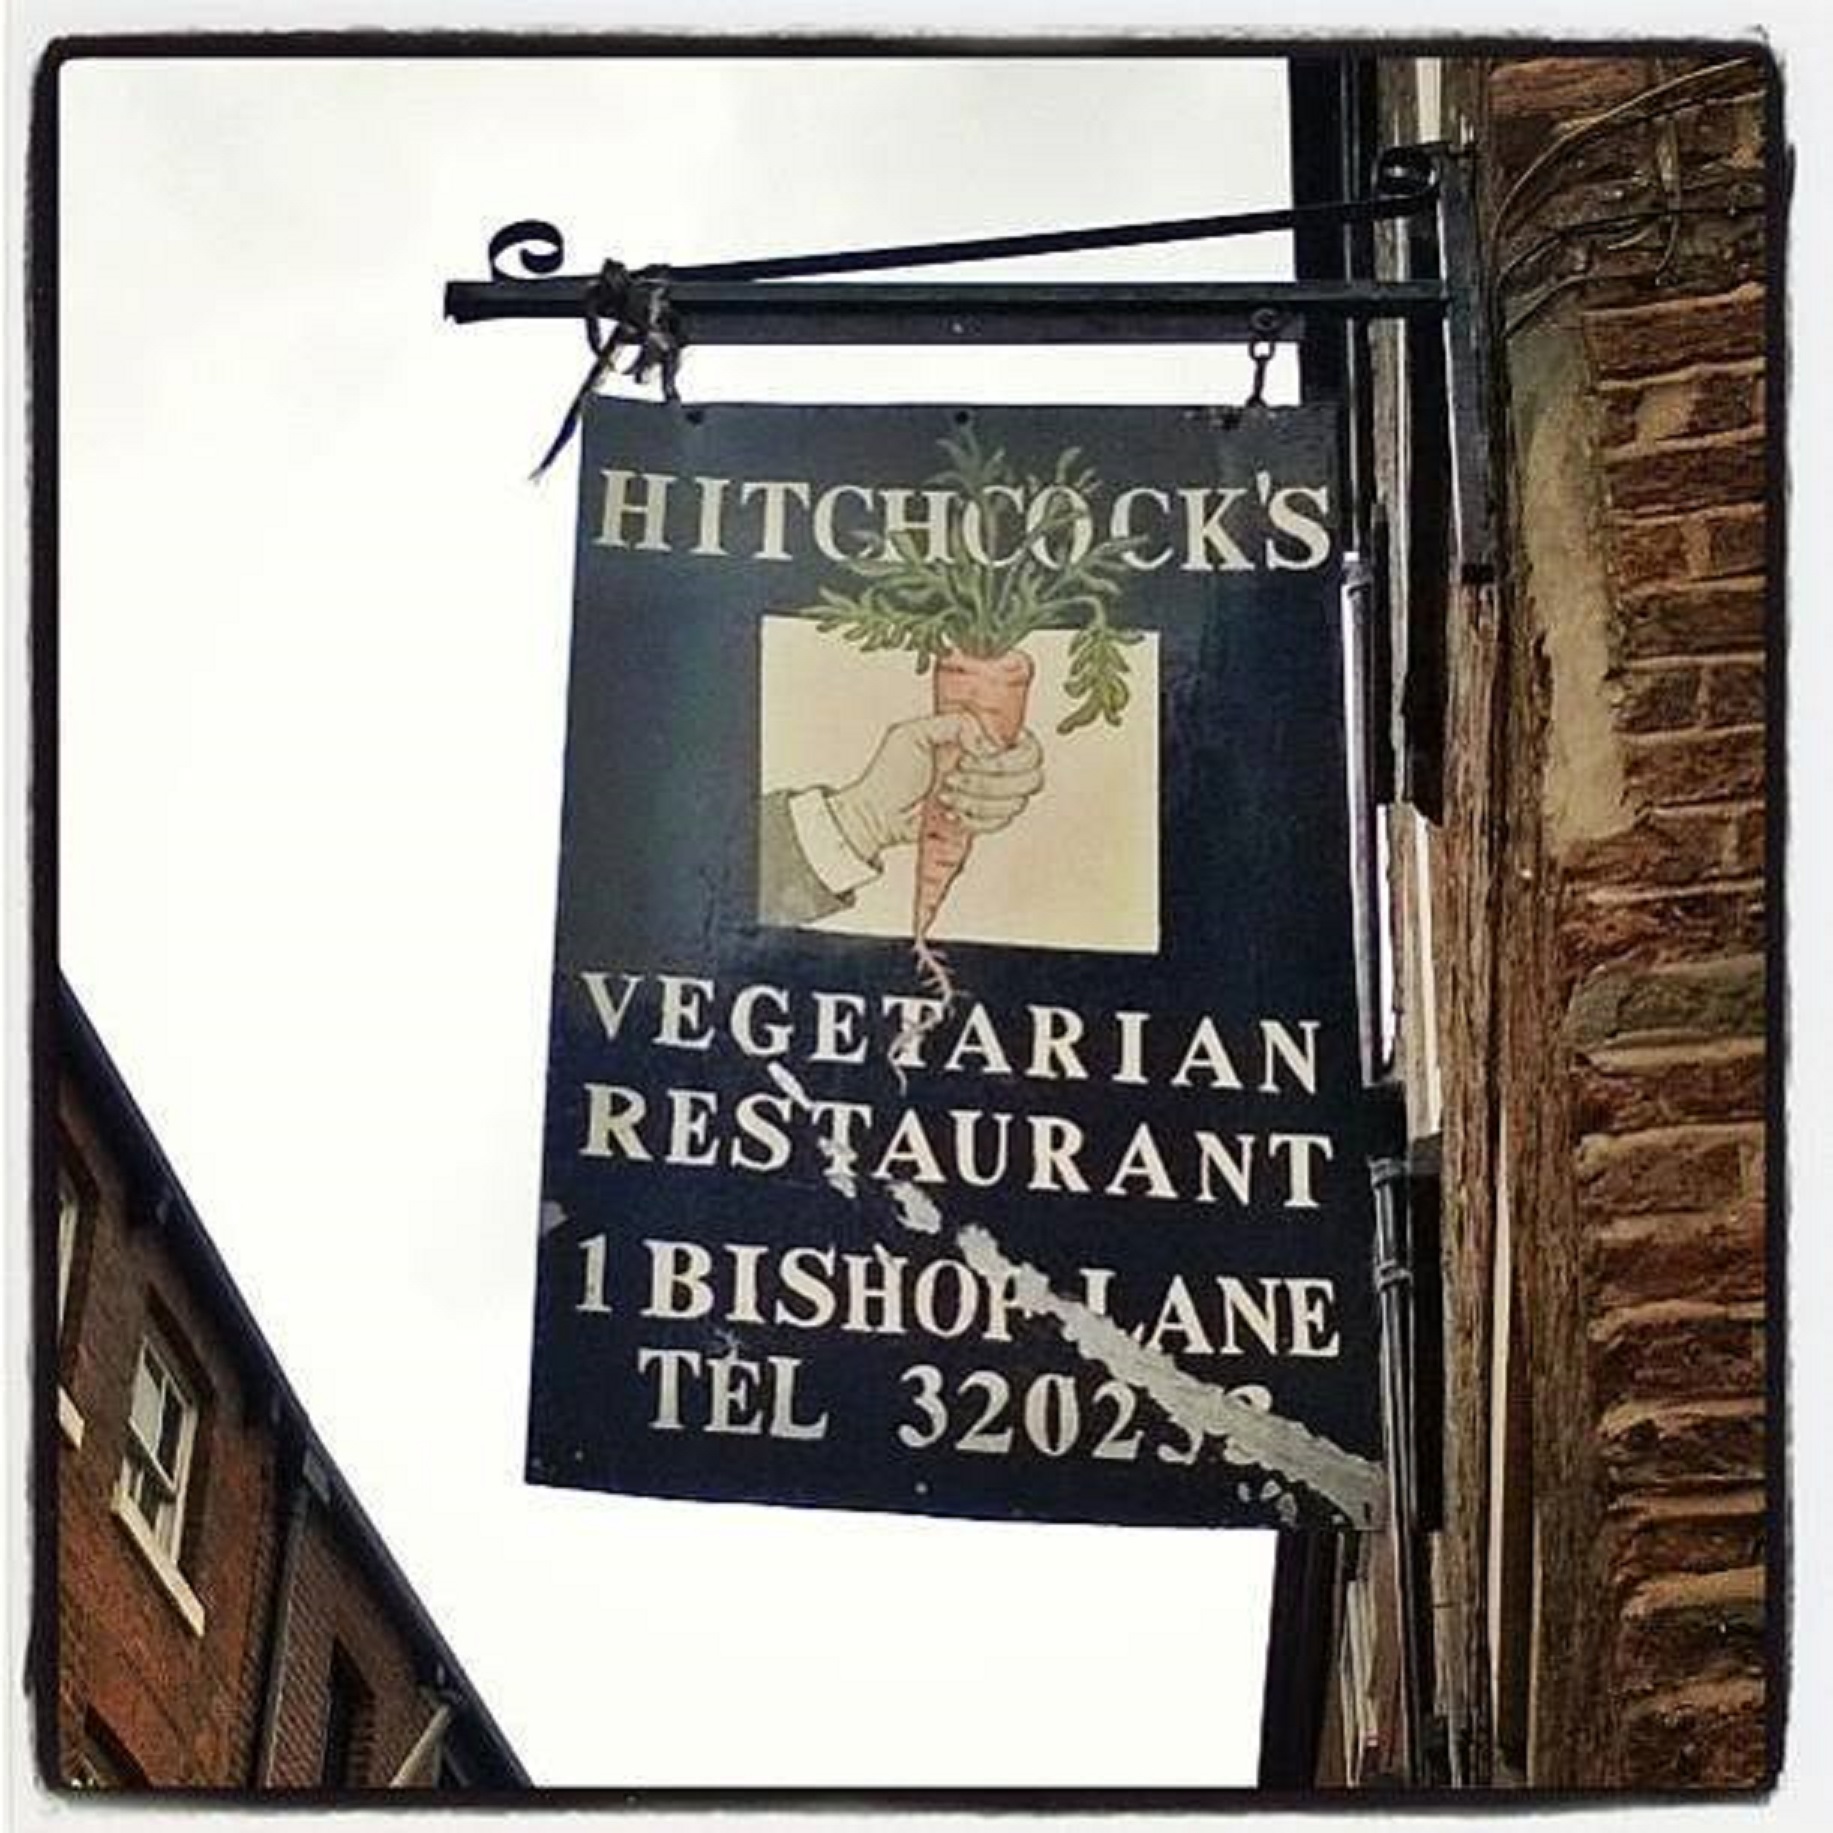 Hitchcock's Vegetarian Restaurant